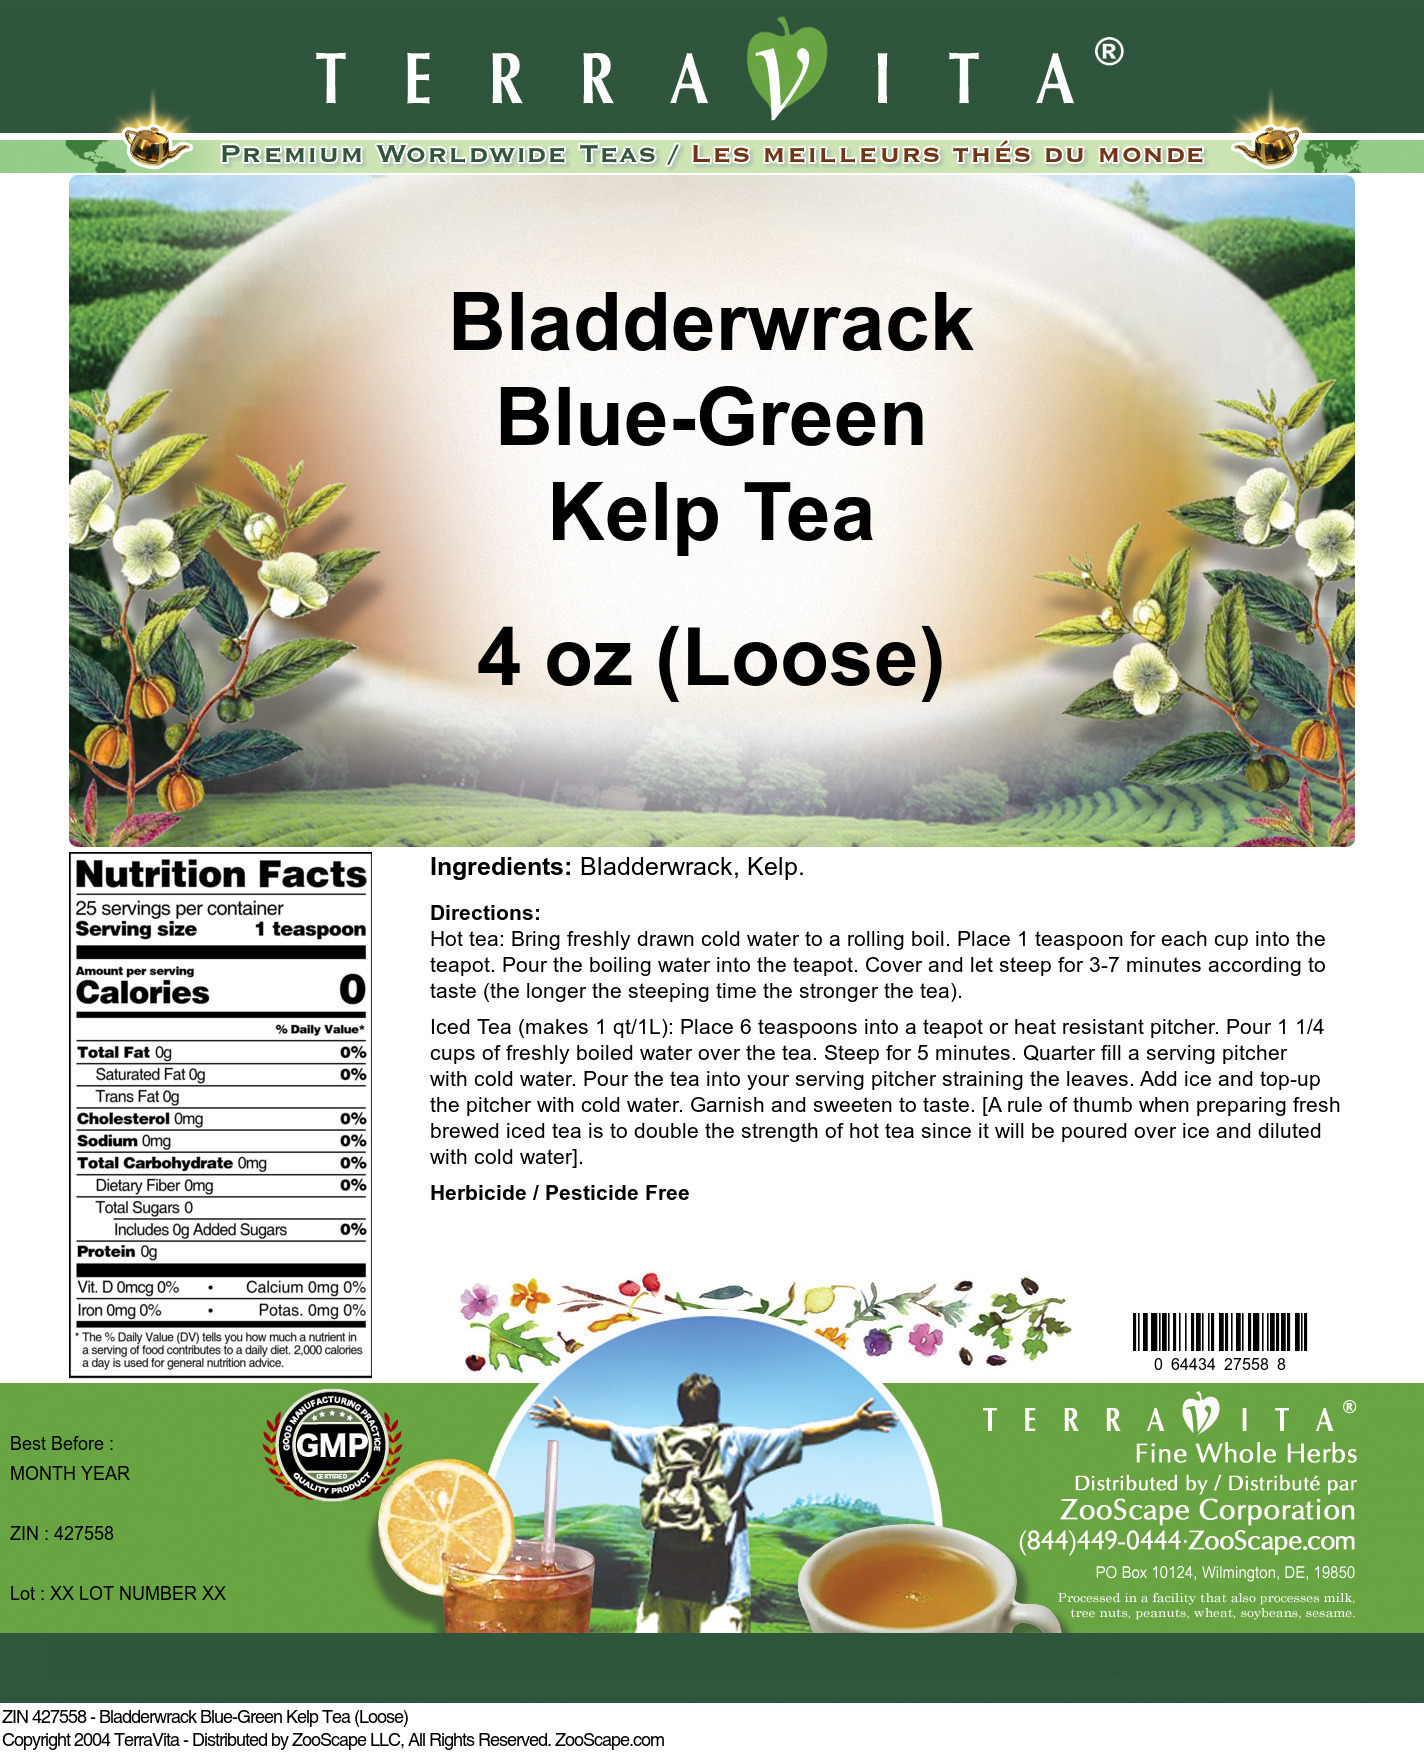 Bladderwrack Blue-Green Kelp Tea (Loose) - Label